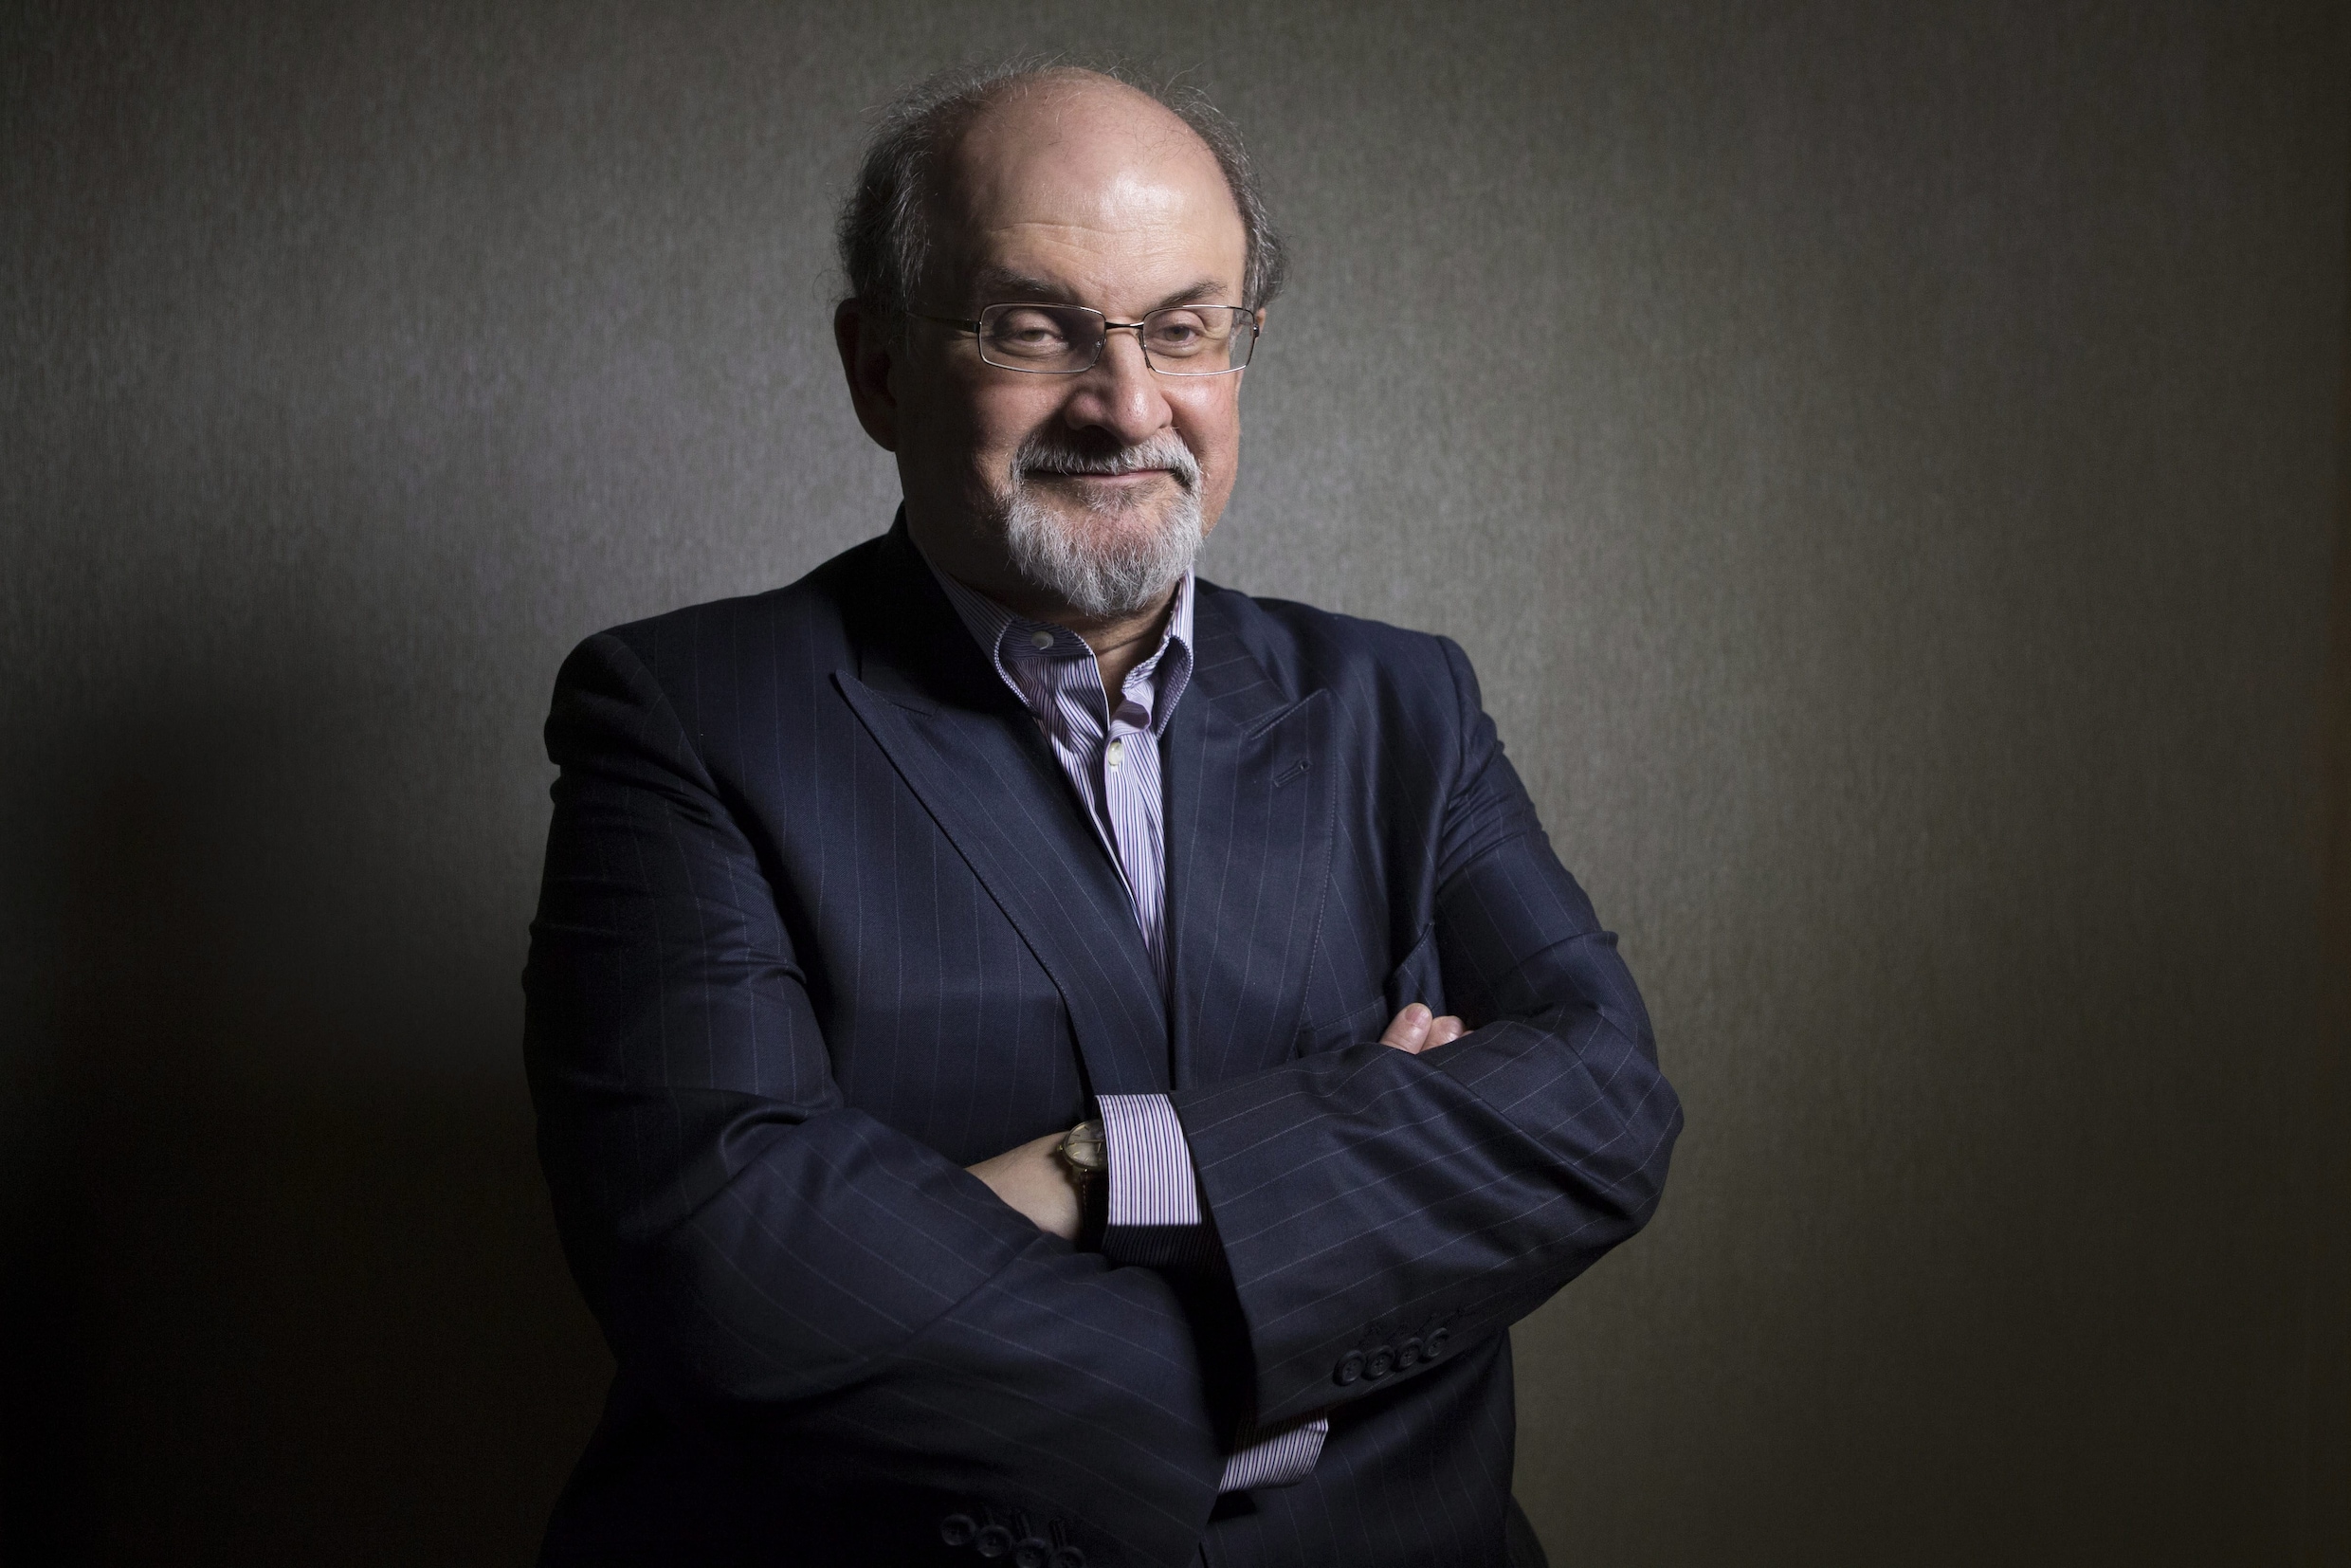 Wat maakt Rushdie zo gehaat? ‘Hij stelt dat Mohammed inspiratie voor de islam van de duivel kreeg’